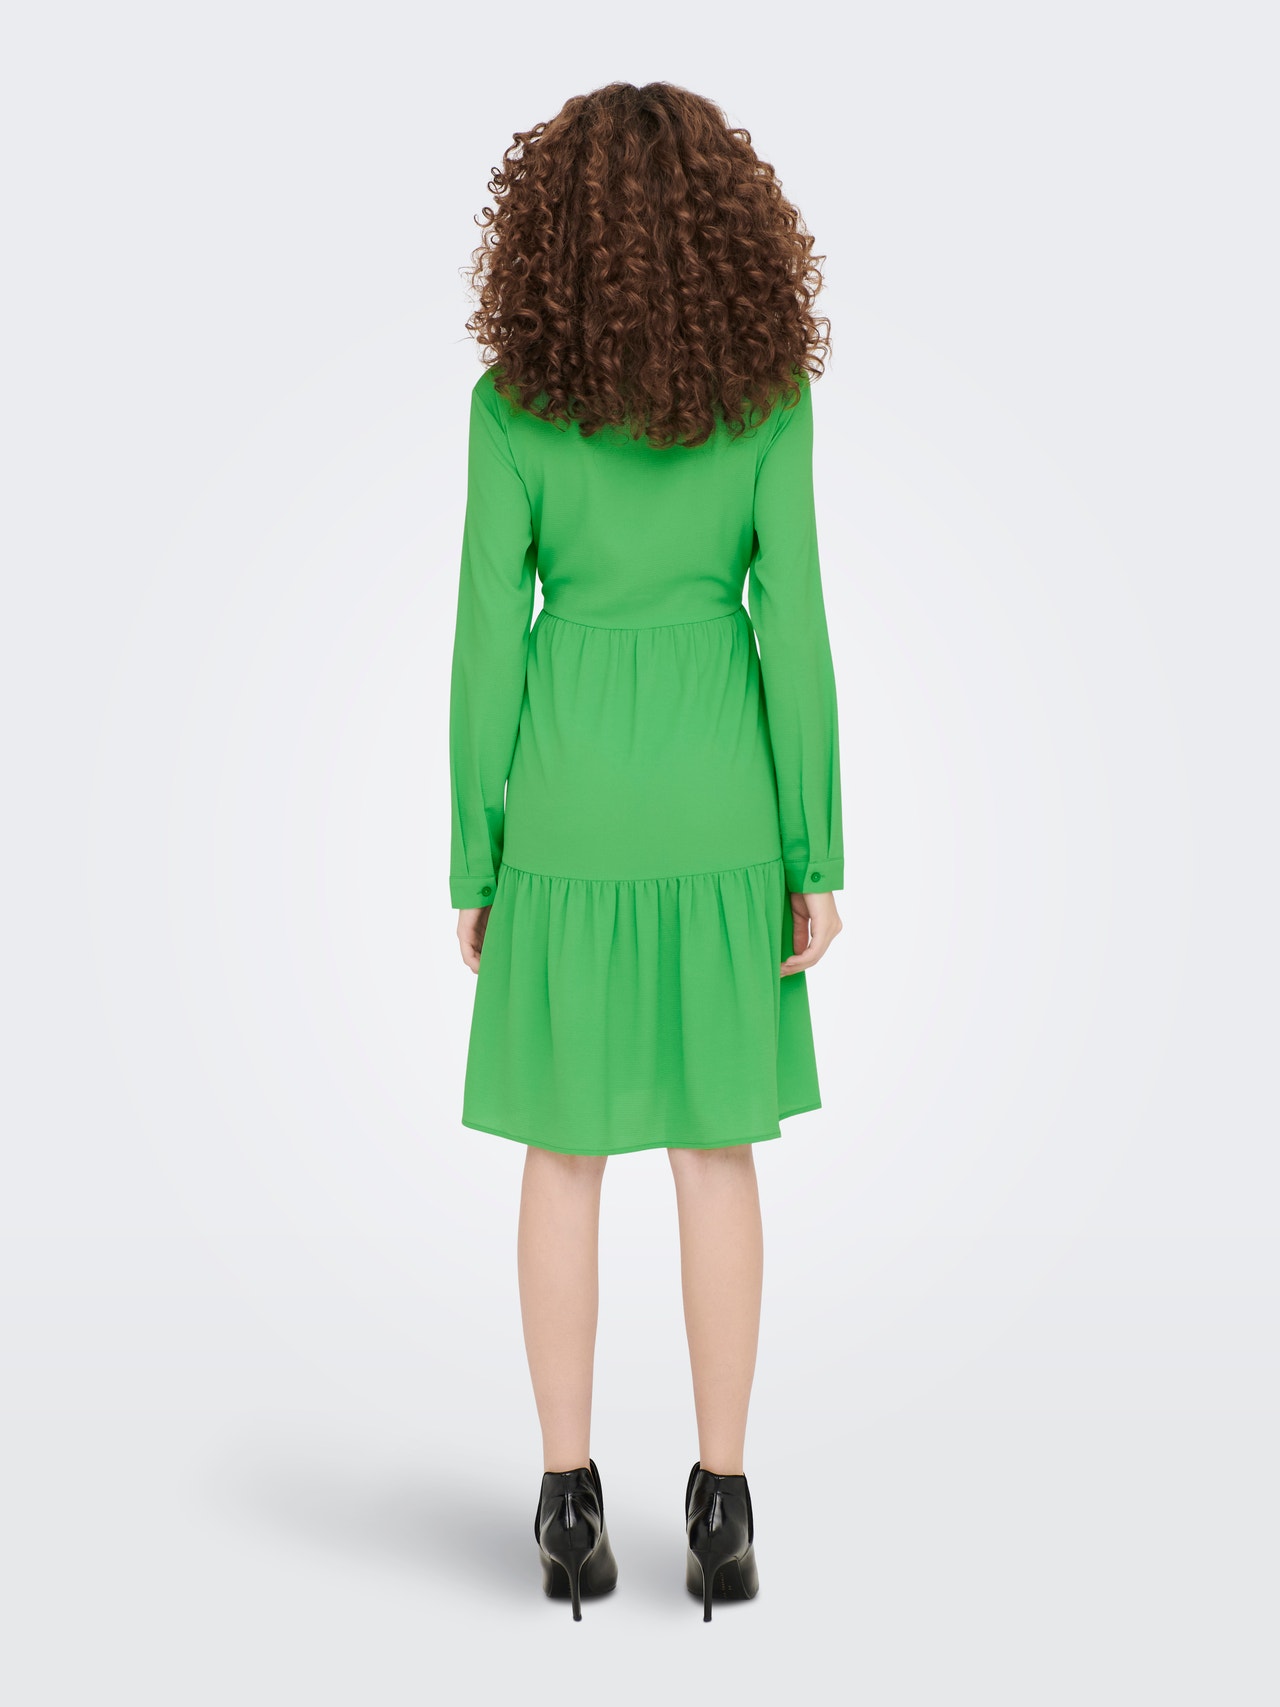 ONLY Normal geschnitten Rundhals Ärmelbündchen mit Knopf Voluminöser Armschnitt Langes Kleid -Kelly Green - 15212412